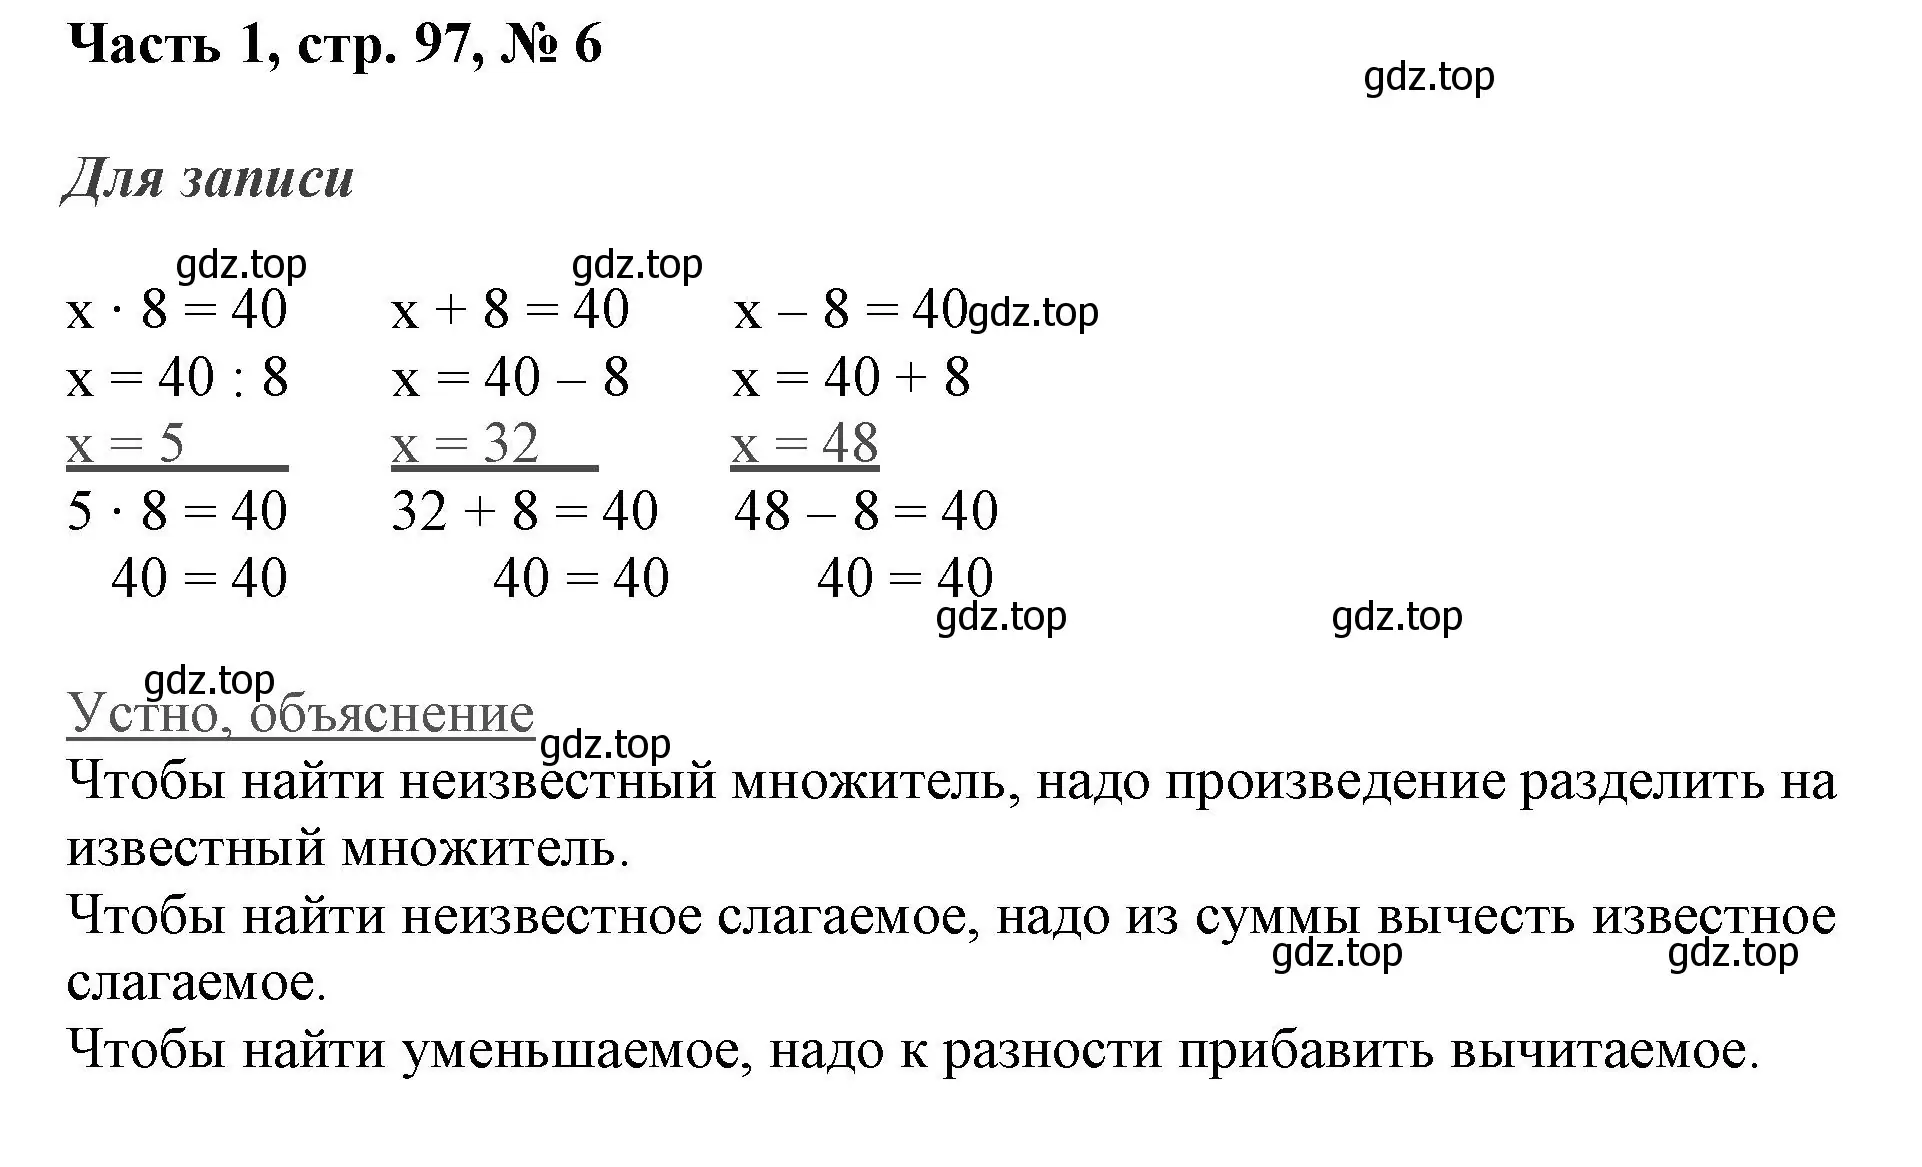 Решение номер 6 (страница 97) гдз по математике 3 класс Моро, Бантова, учебник 1 часть